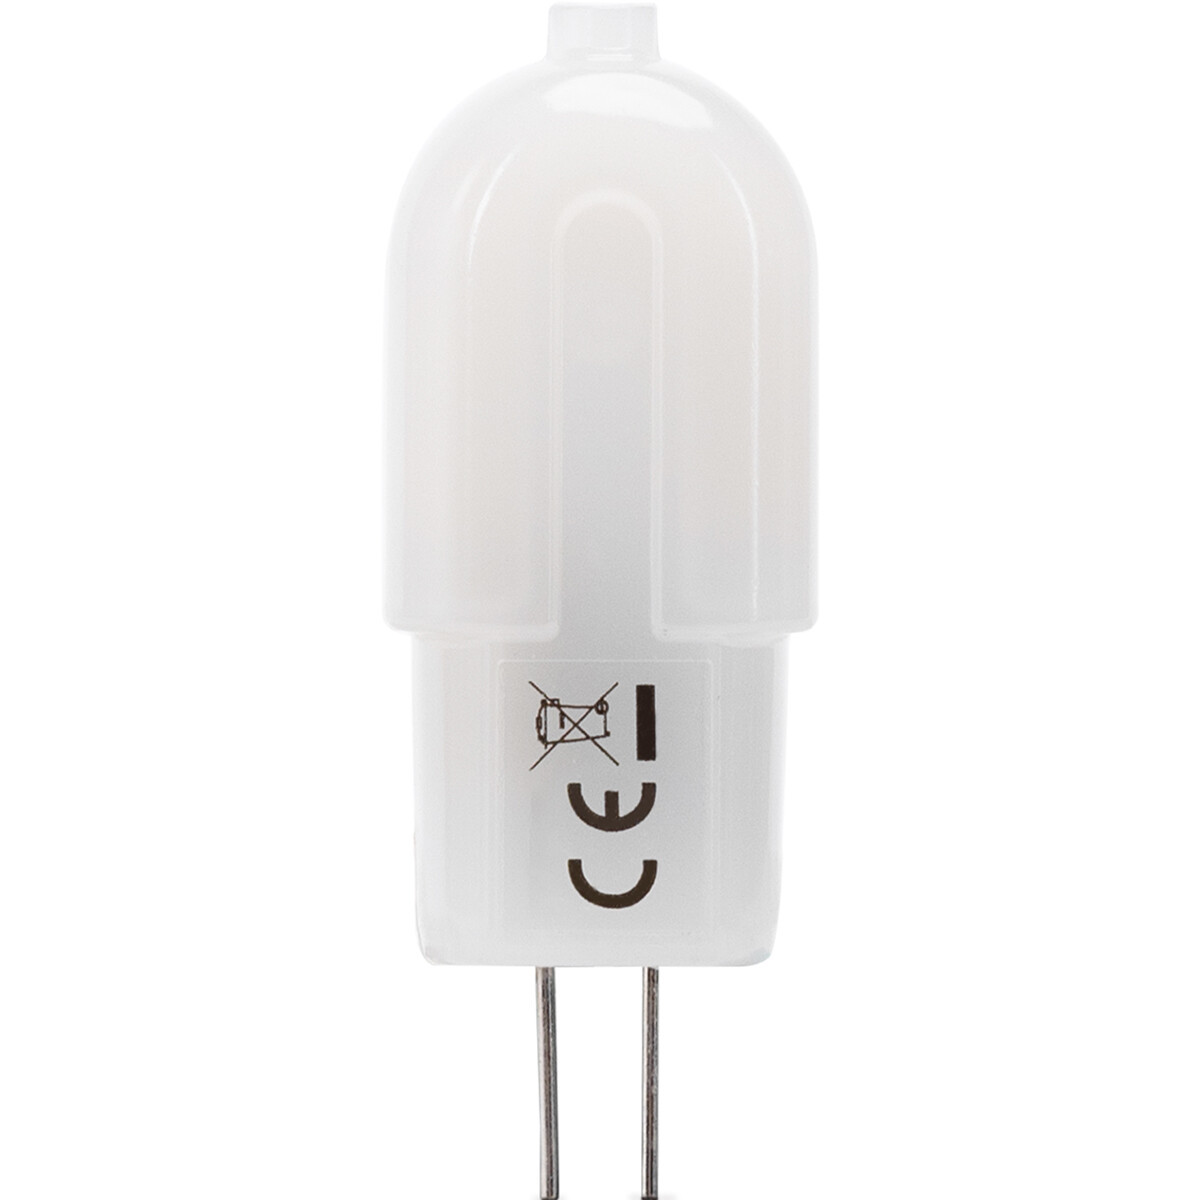 LED Lamp - Velvalux - G4 Fitting - Dimbaar - 2W - Helder/Koud Wit 6000K - Melkwit - 12V Steeklamp | Vervangt 20W